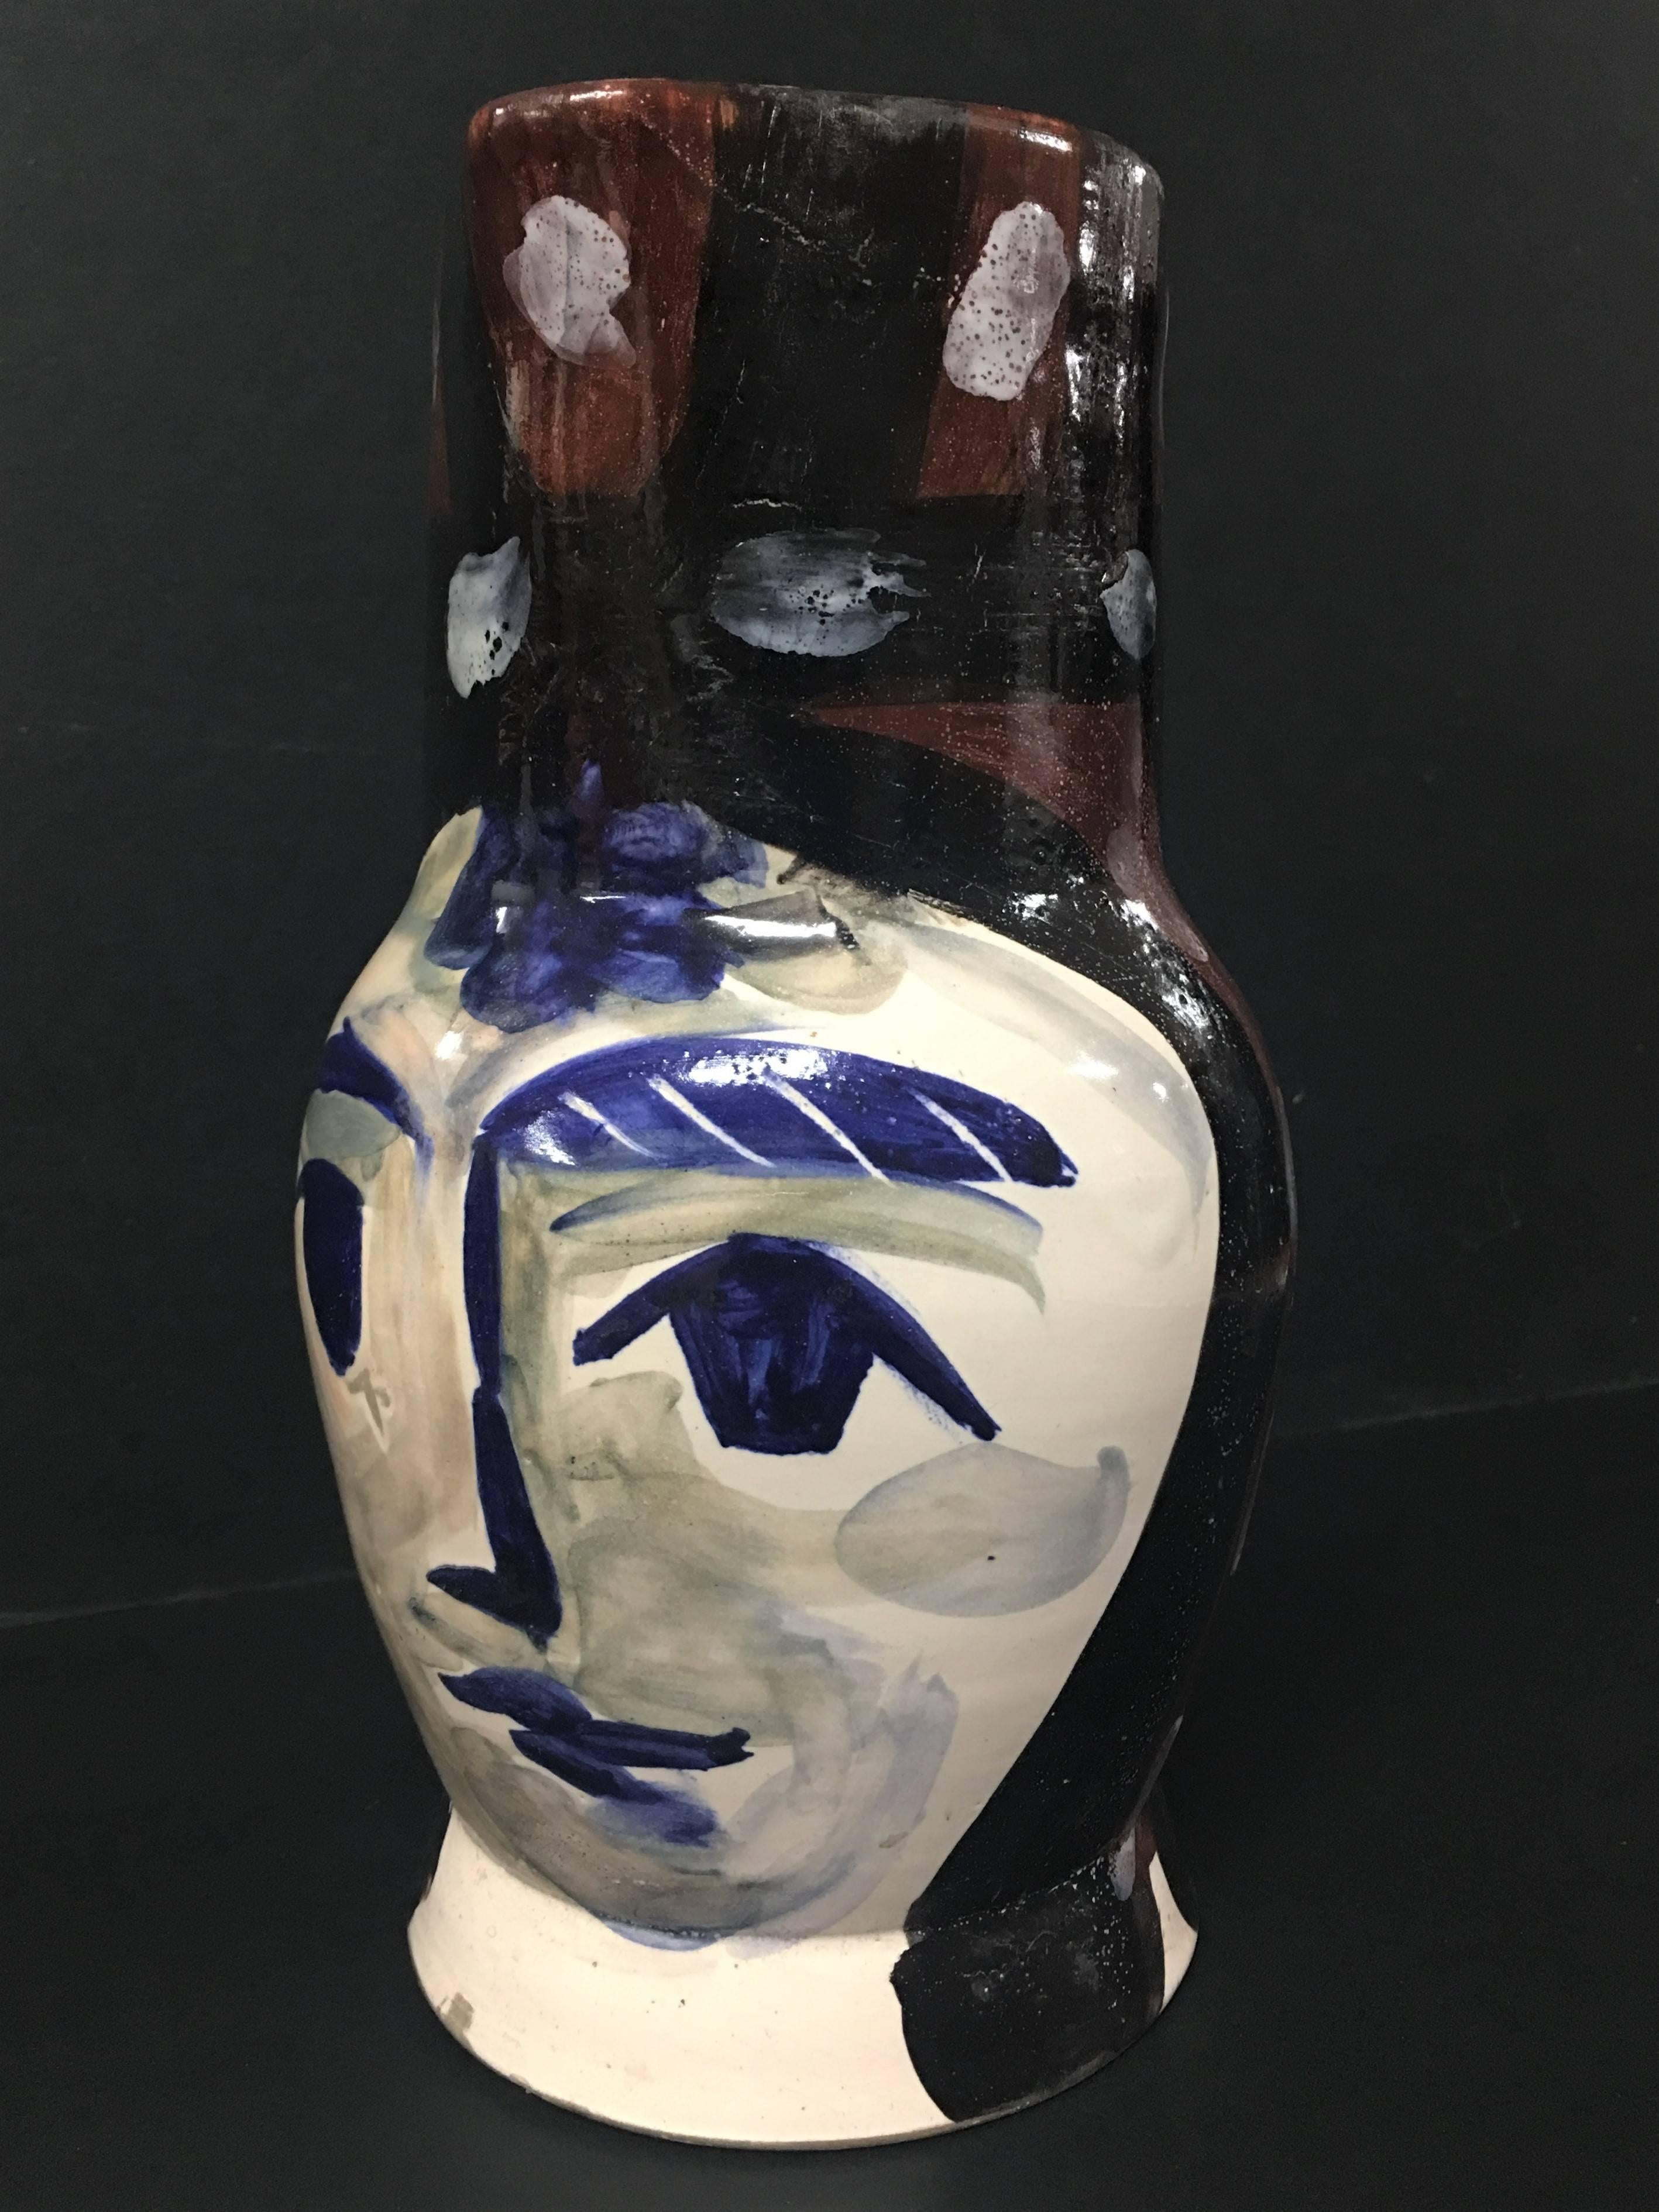  Pablo Picasso, Unique variant of "Tête peinte" (Painted Face), pitcher, ceramic